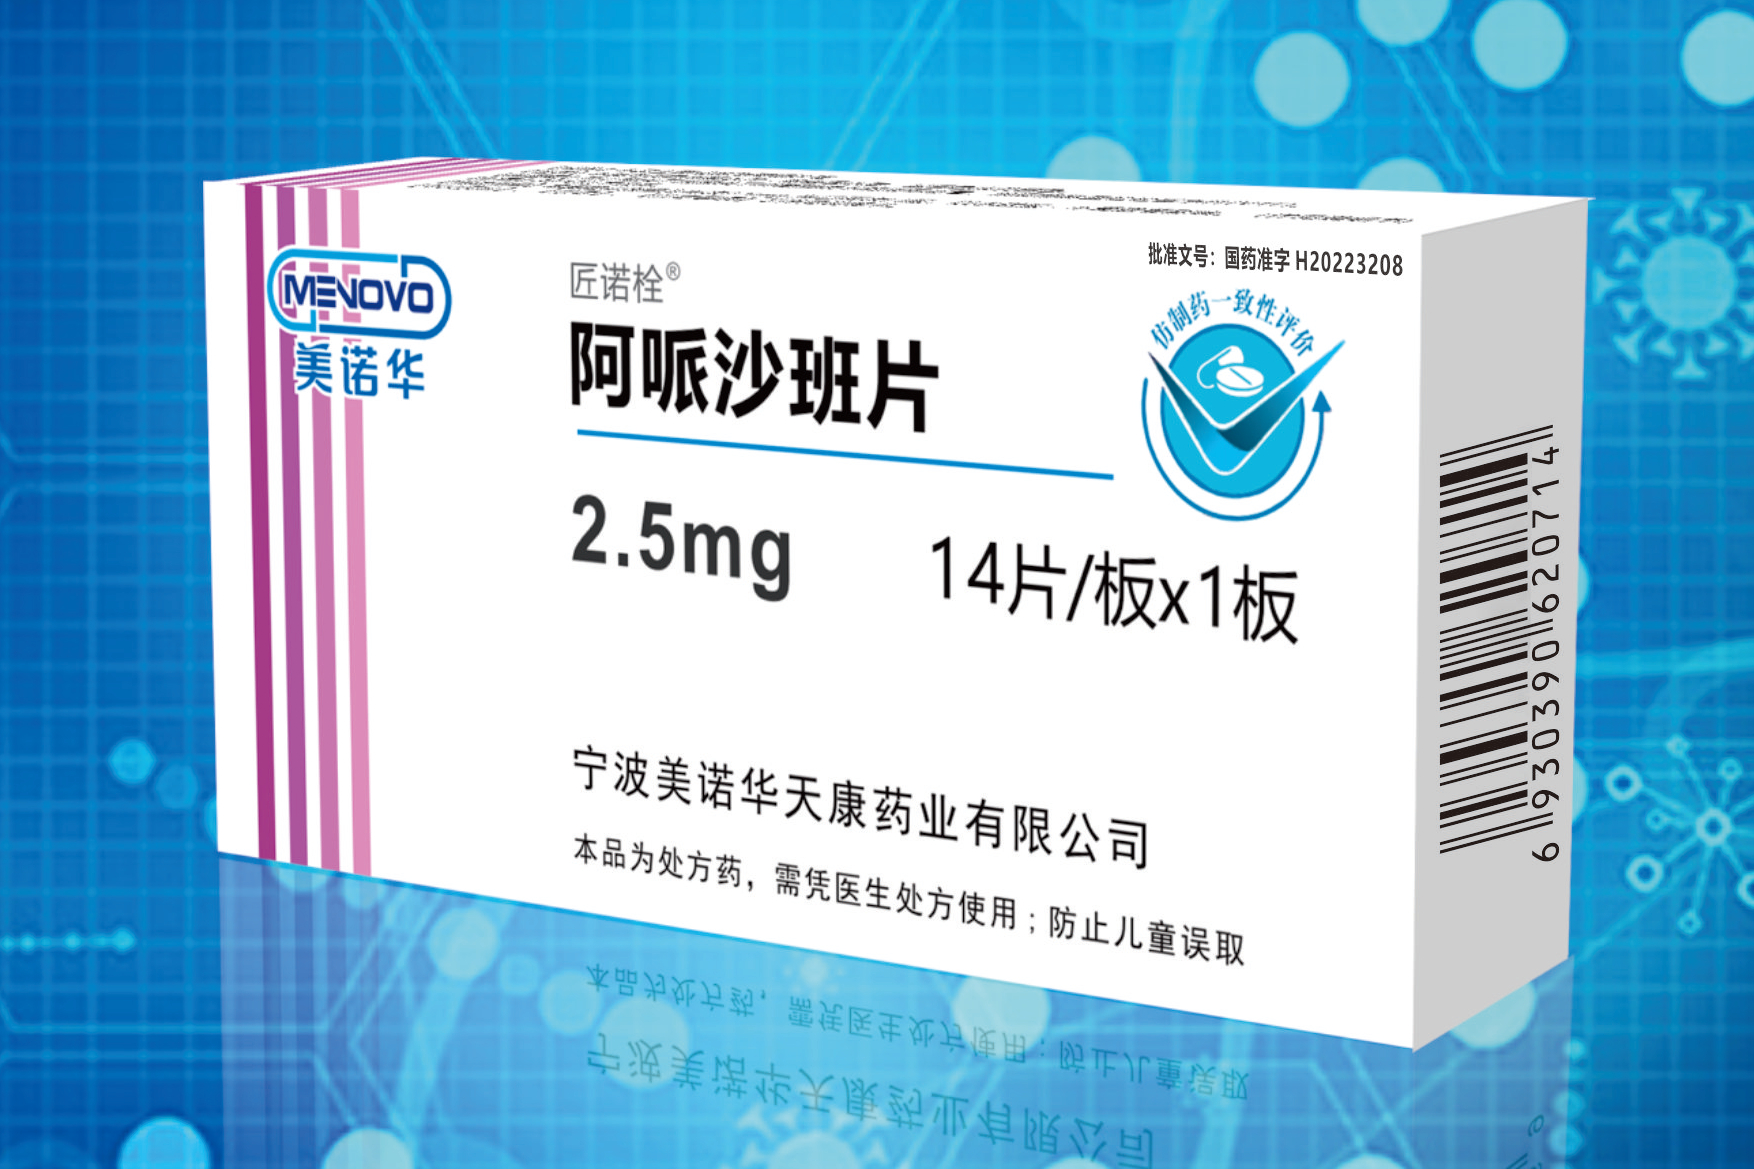 购买阿立哌唑 片 ( Arzu （aripiprazole ） ) Online - buy-pharma.md